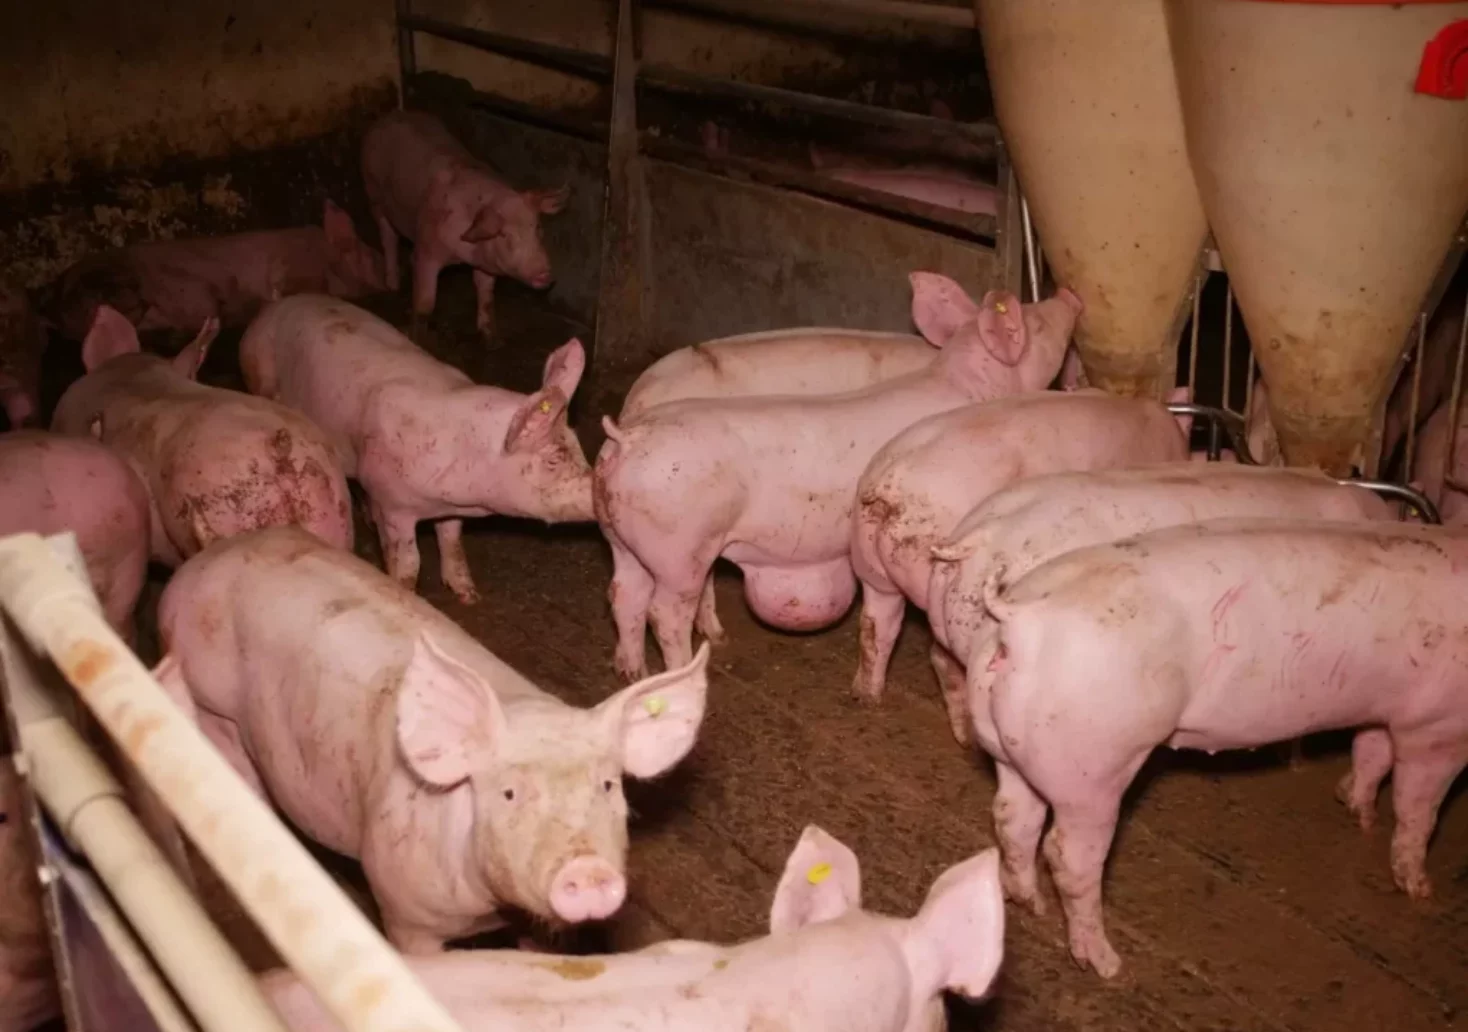 Fotos auf 5min.at zeigt Schweine, die auf Vollspaltenböden gehalten werden.